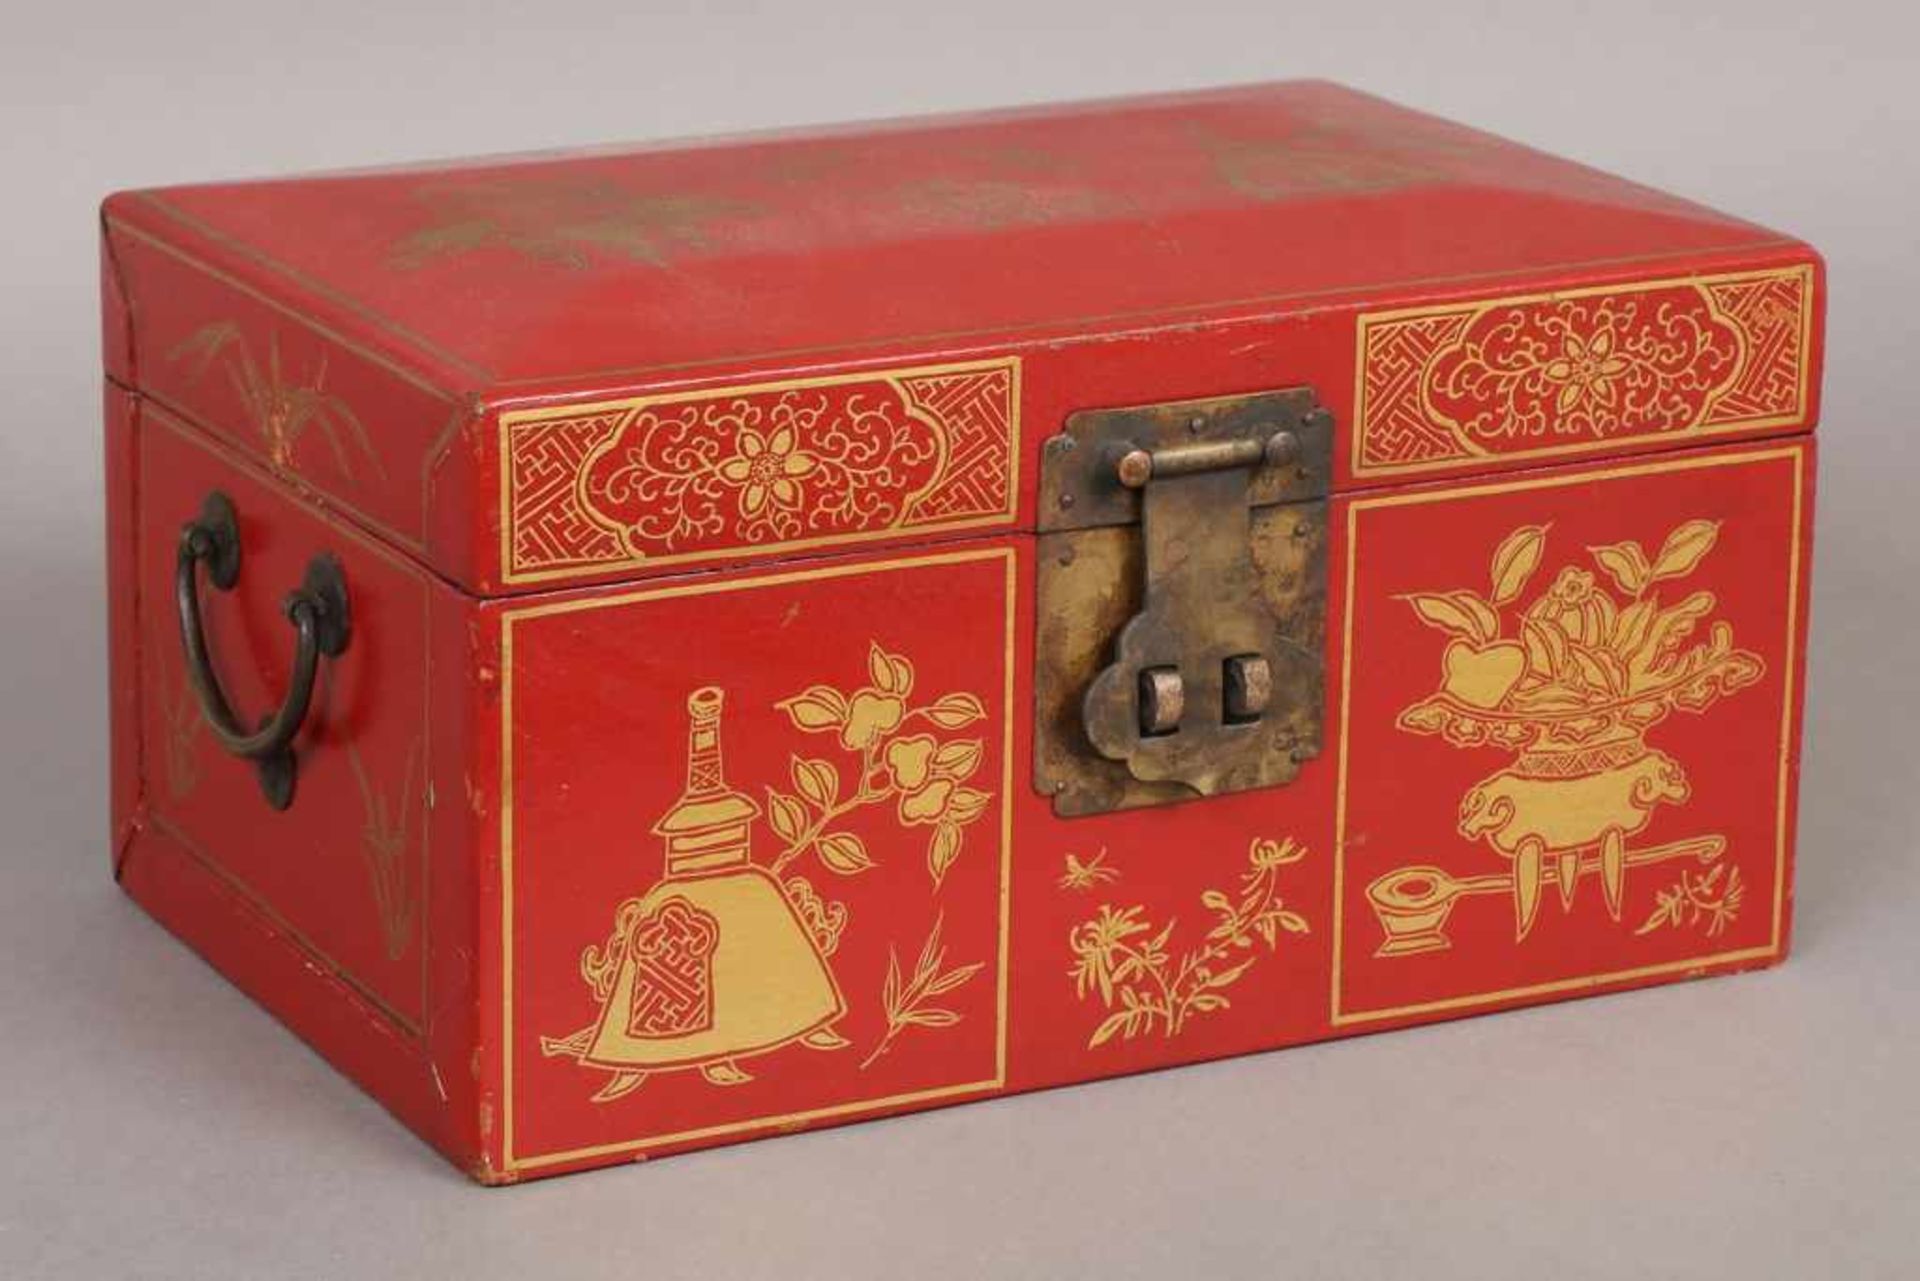 Chinesische Holzschatulle beledert und rot lackiert, Scharnierdeckel, 2 seitliche Bügelgriffe (